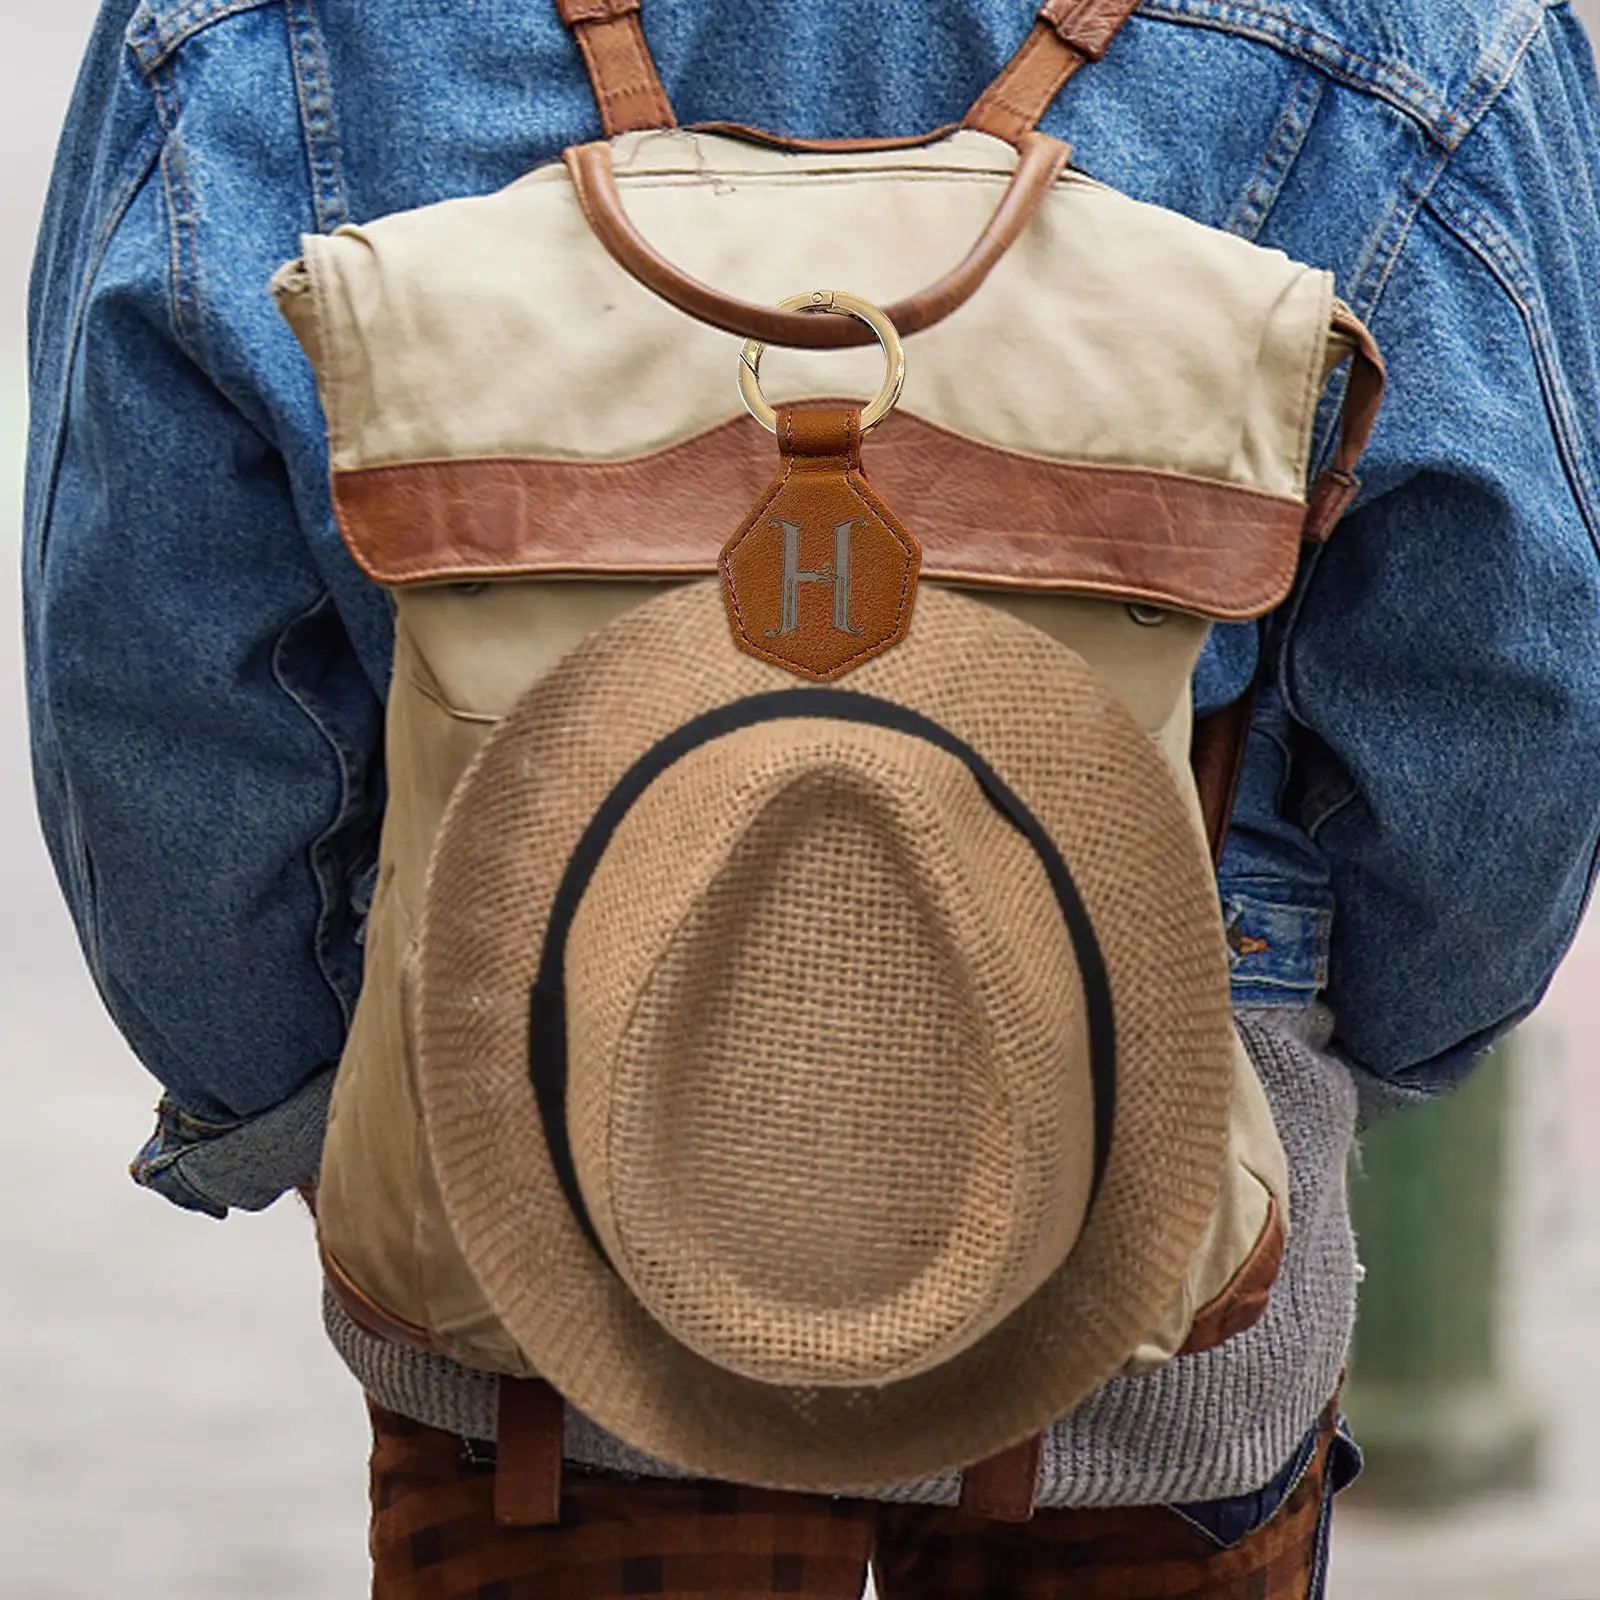 Clip on Bag Hat Holder Towel Magnetic Hats Clip for Traveling Bags Backpacks